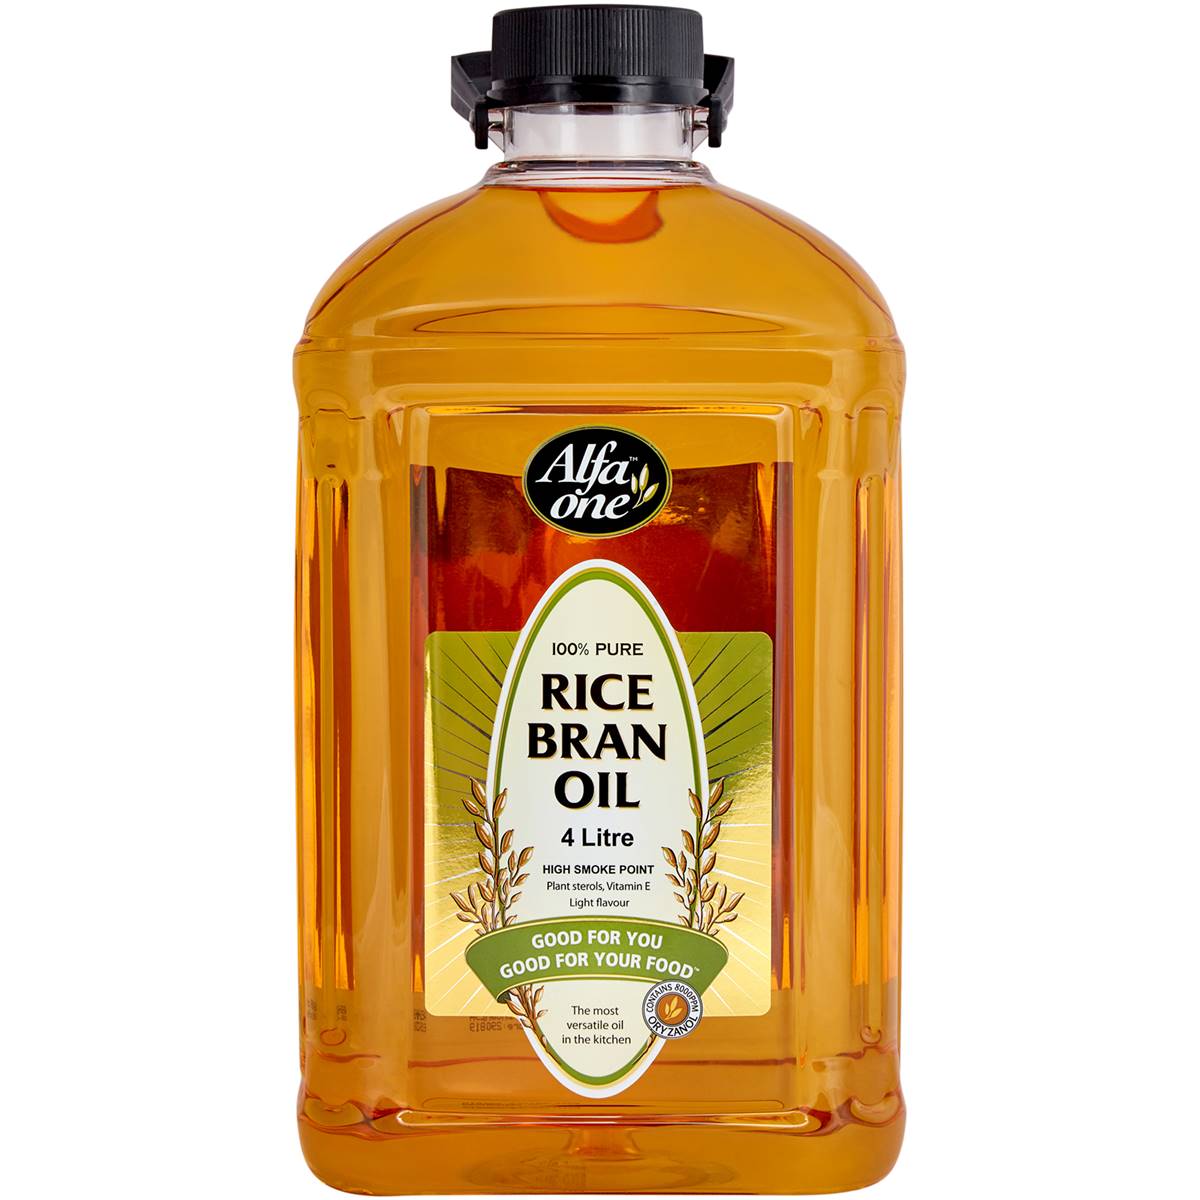 Alfa One Rice Bran Oil 4l is halal suitable, vegan, vegetarian